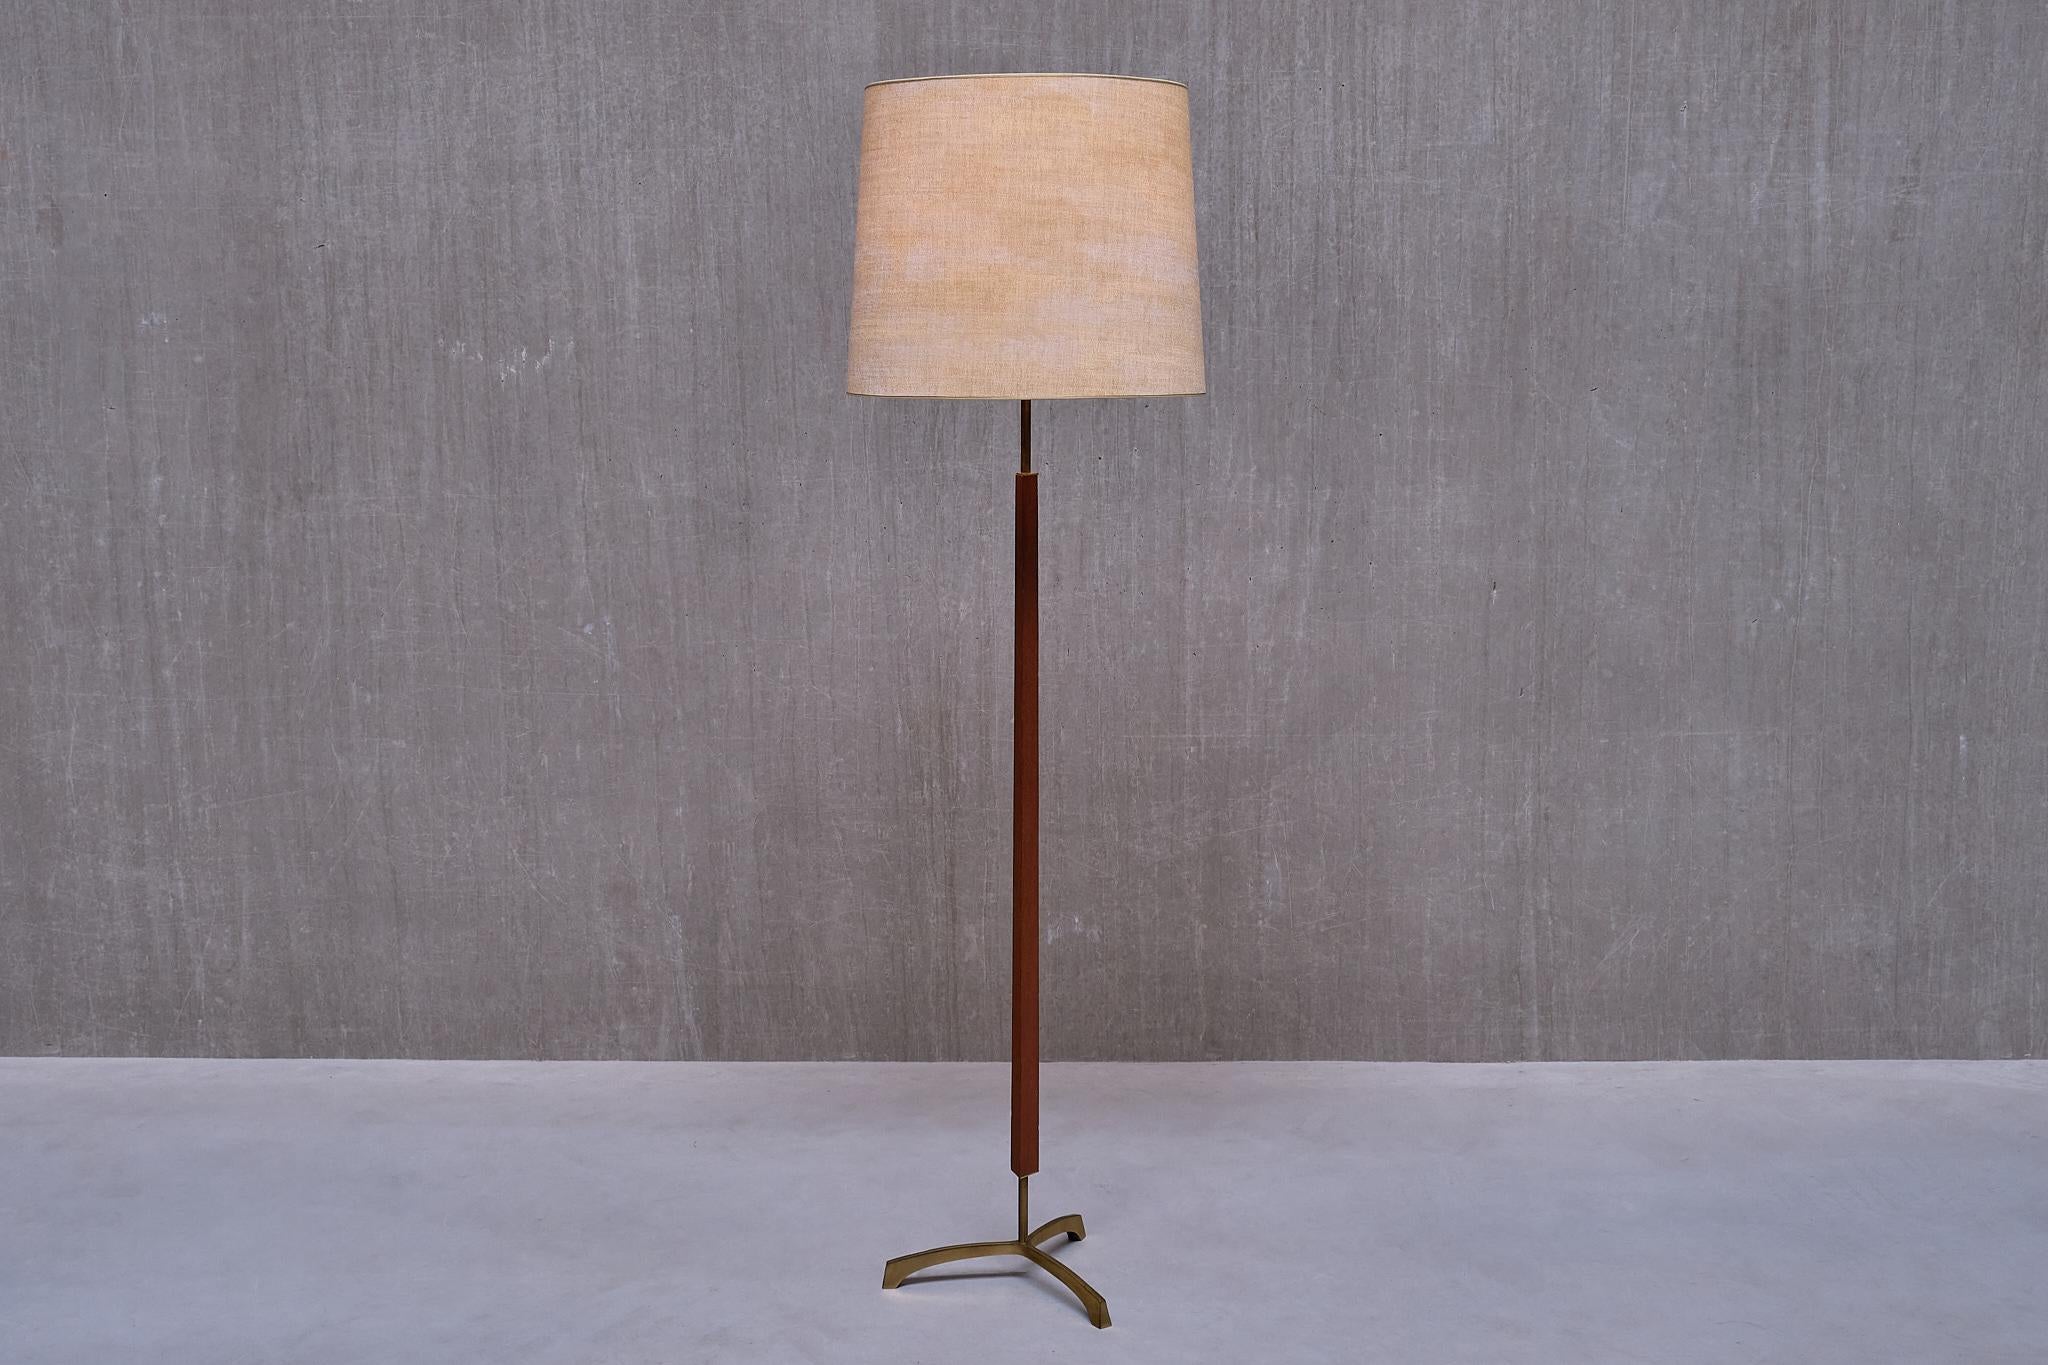 Ce rare lampadaire a été produit au Danemark à la fin des années 1950. 

La lampe se caractérise par une base légèrement surélevée à trois pieds, fabriquée en laiton massif. La tige centrale en bois de teck est réalisée en forme triangulaire, ce qui